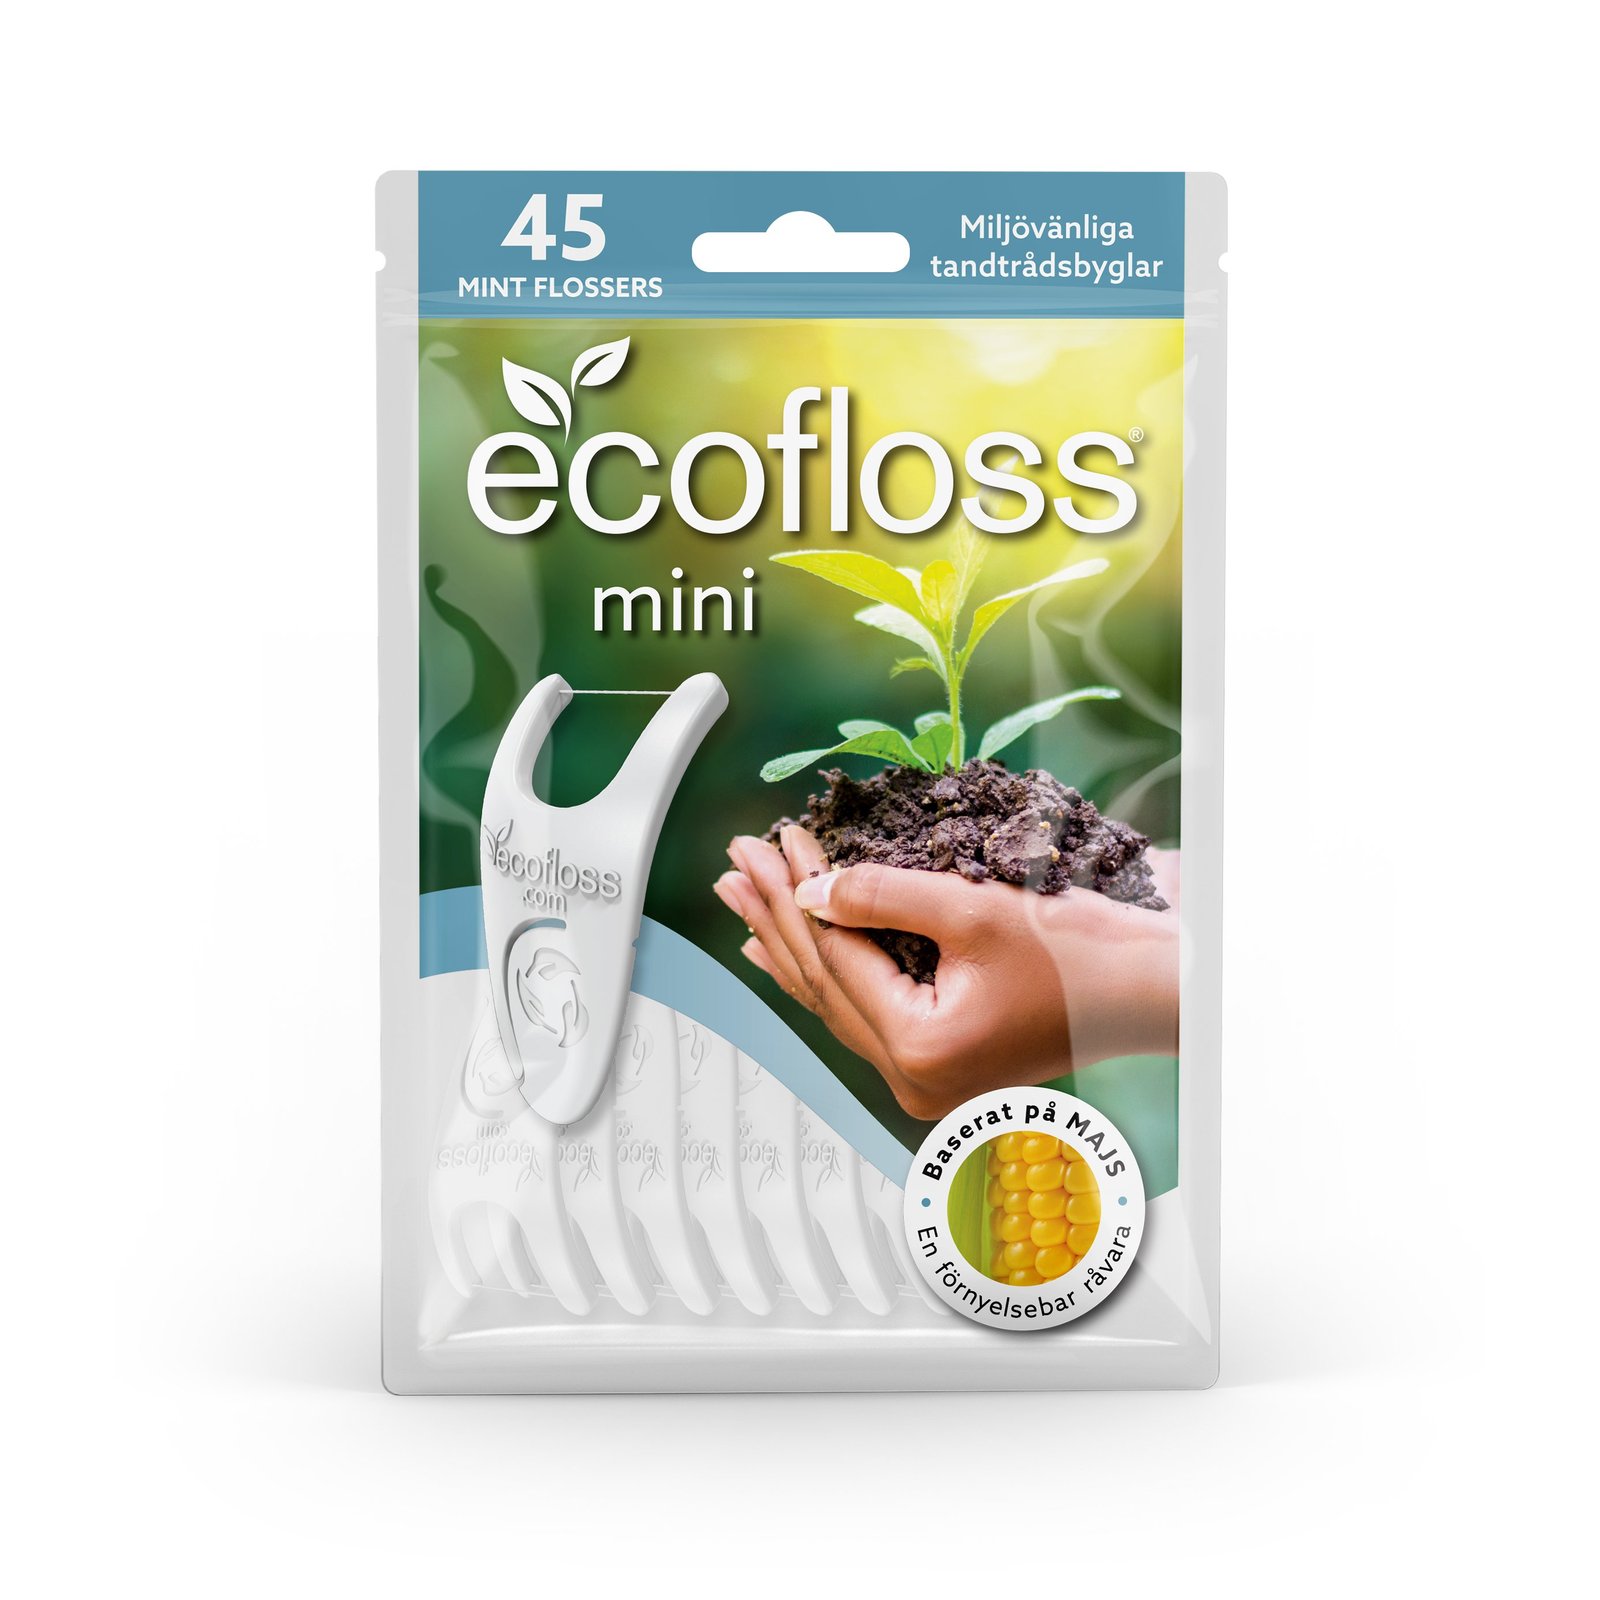 Ecofloss Mini Tandtrådbyglar & Hållare 45 st